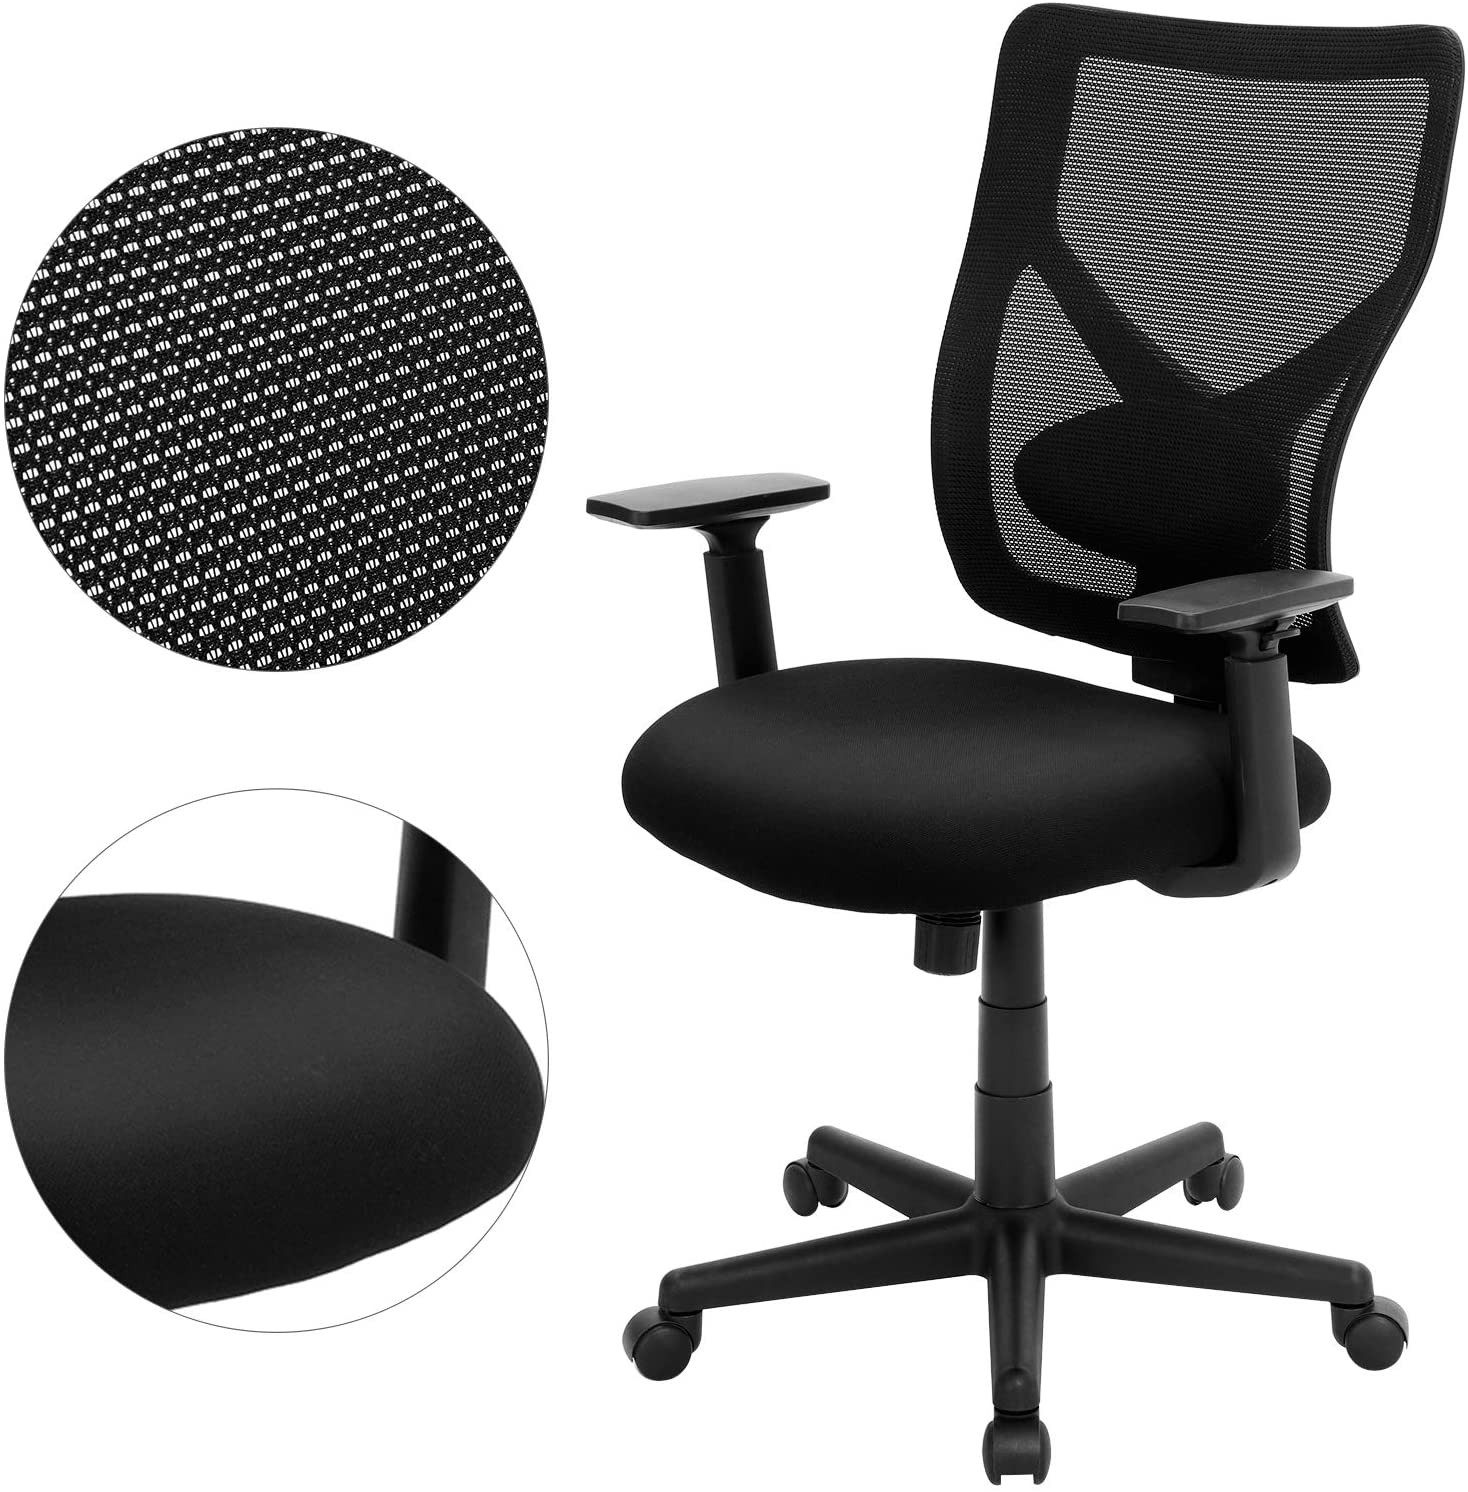 Kancelářská židle OBN36BK